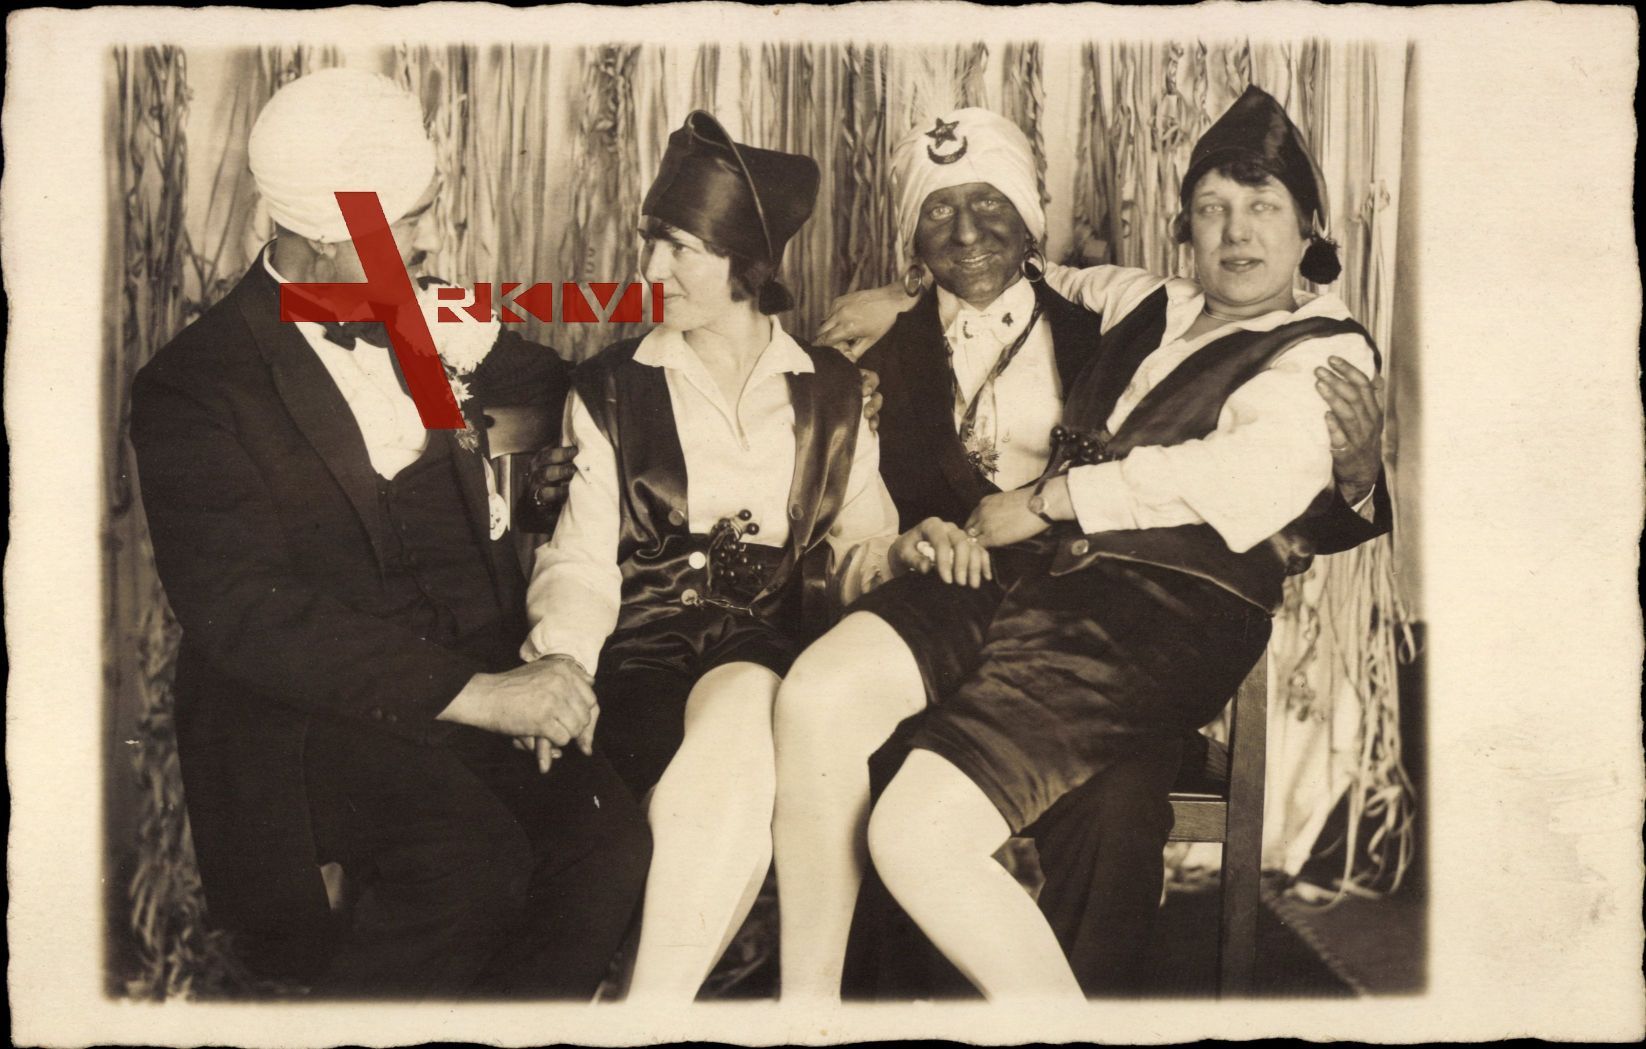 Fastnacht 1928, zwei Männer und zwei Frauen, Kostüme